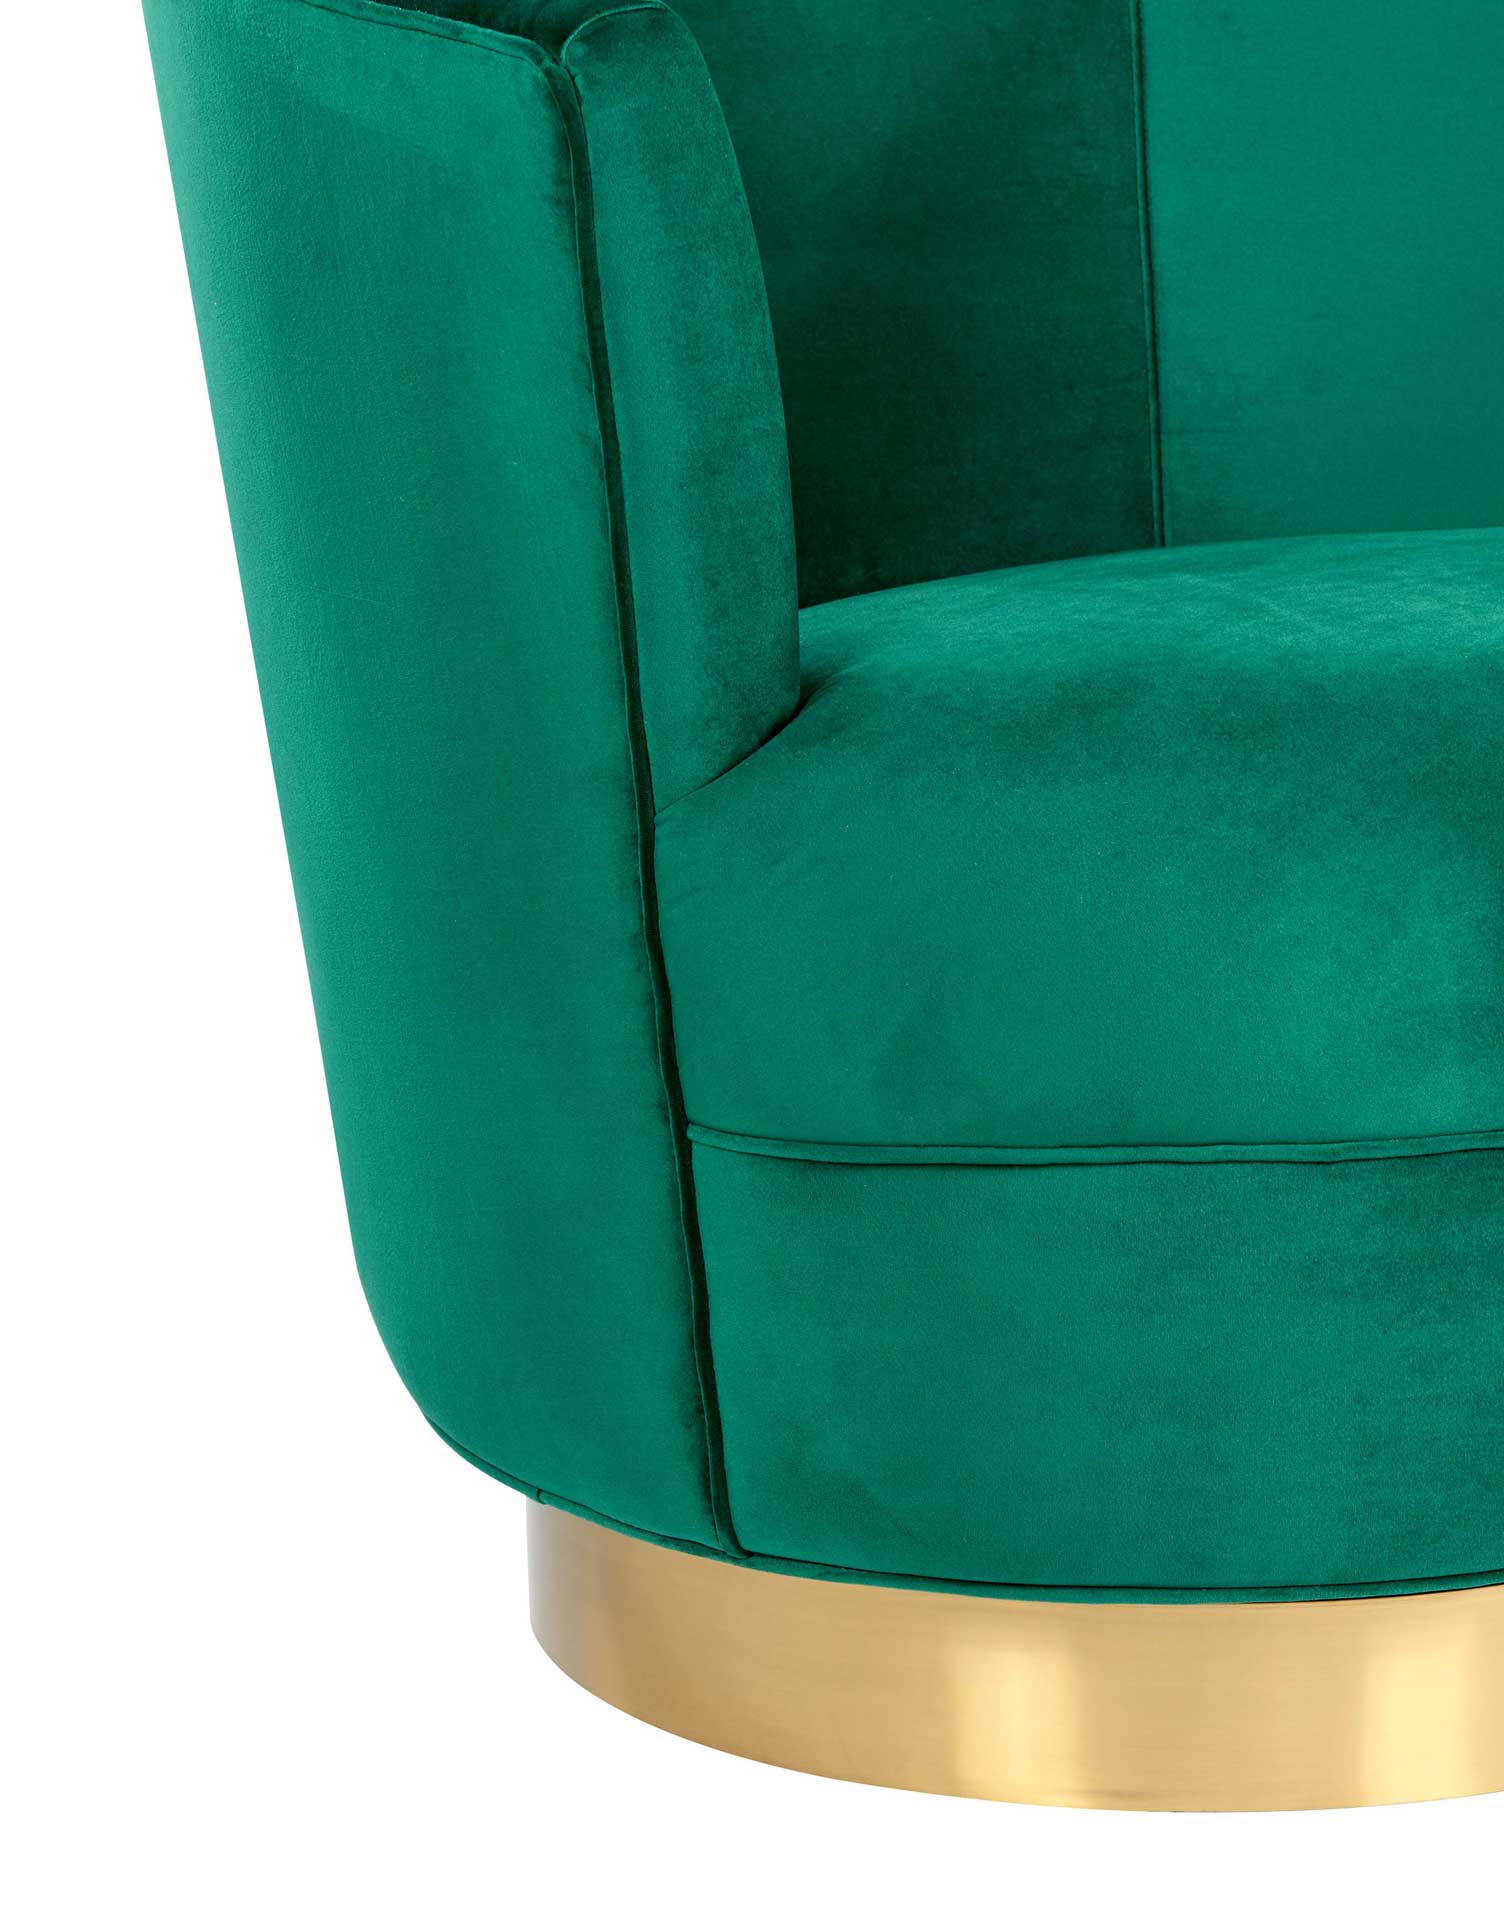 Noelle Swivel Chair Green